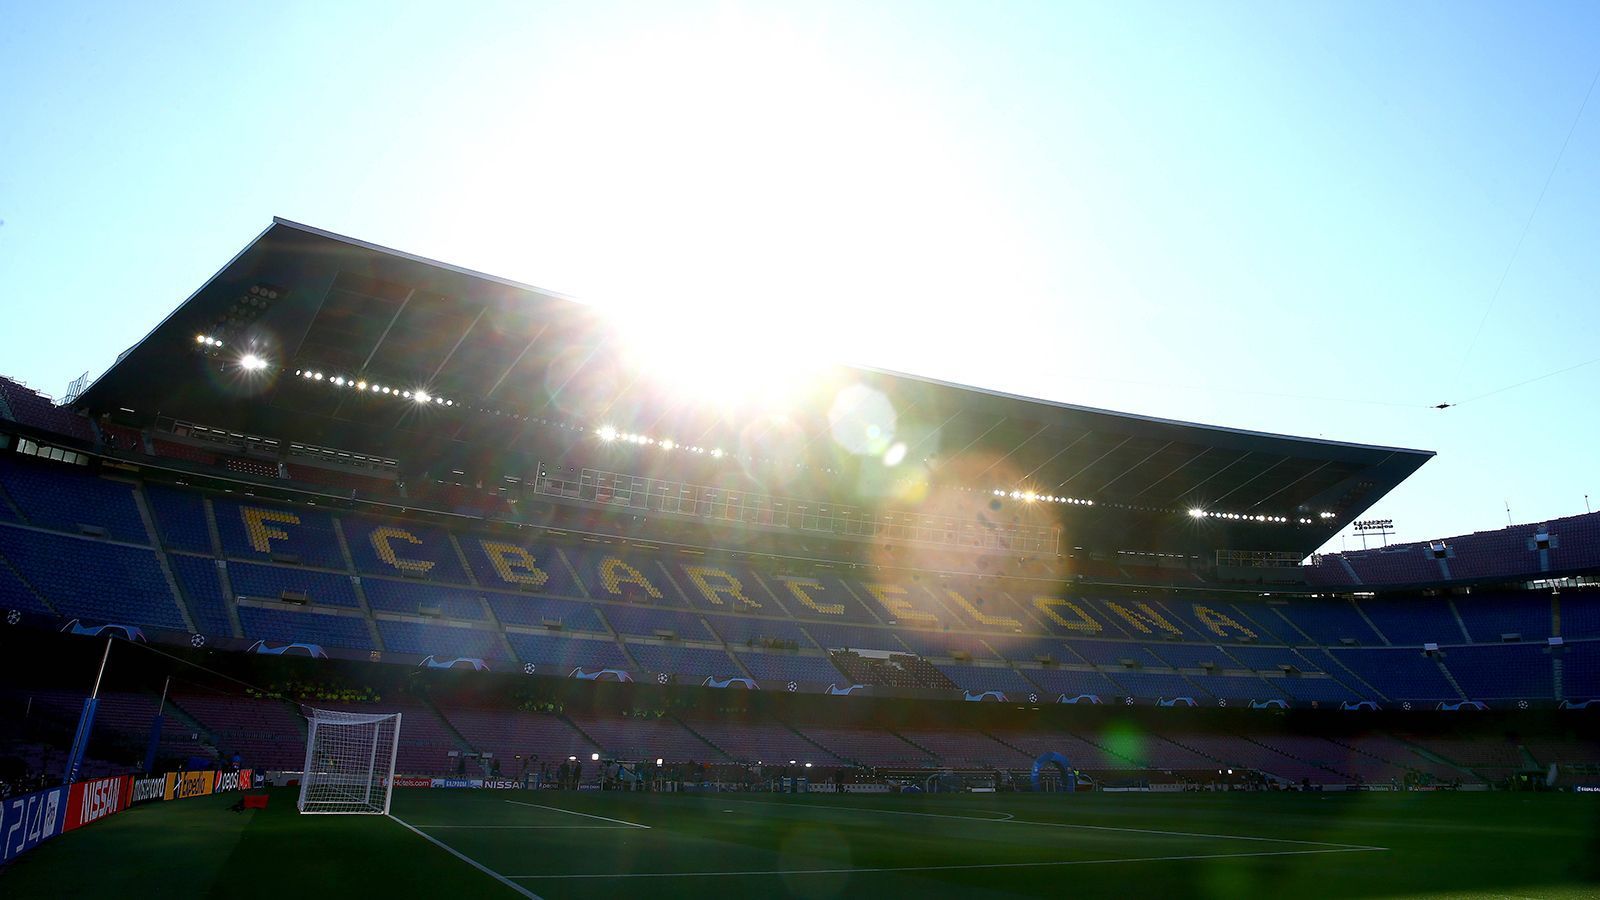 
                <strong>Sanierung und Aufstockung: Das Camp Nou soll erneuert werden</strong><br>
                Das Camp Nou ist eines der legendärsten Fußballstadien der Welt – und auch eines der renovierungsbedürftigsten. Hygiene- und Sicherheitsmängel sind im 1957 eingeweihten Stadion seit längerem bekannt, nun soll im Rahmen des Projekts "Espai Barca" nicht nur das Camp Nou saniert und auf 110.000 Zuschauer aufgestockt, sondern der gesamte Stadionkomplex des FC Barcelona erneuert werden.
              